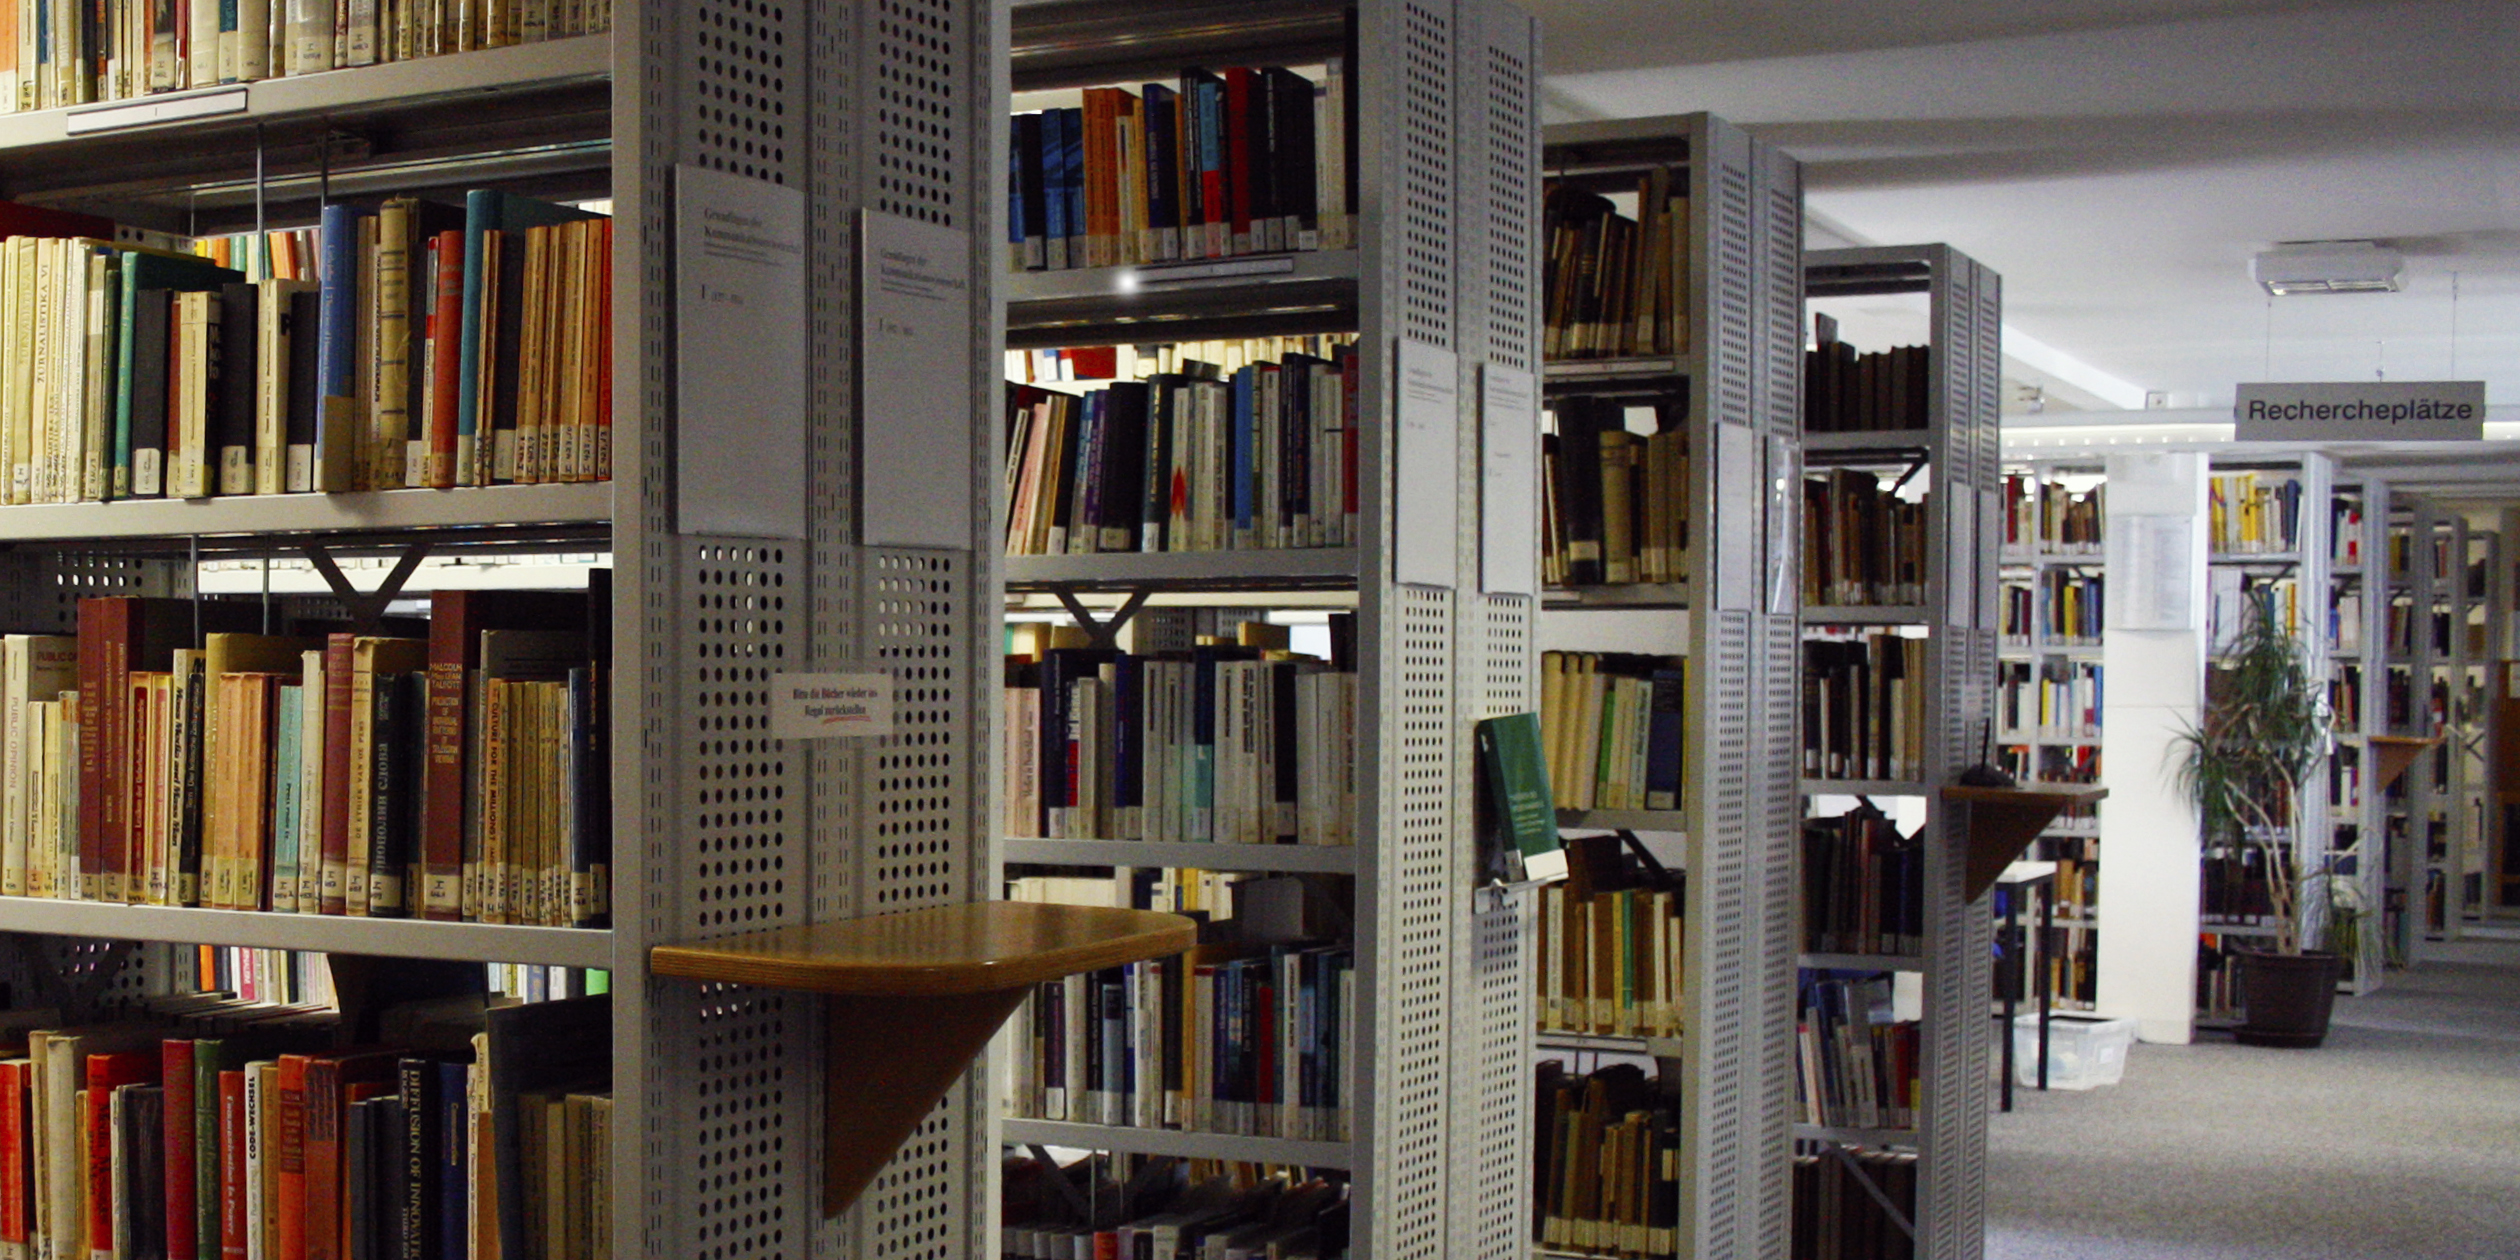 Die Bibliothek des IfKs